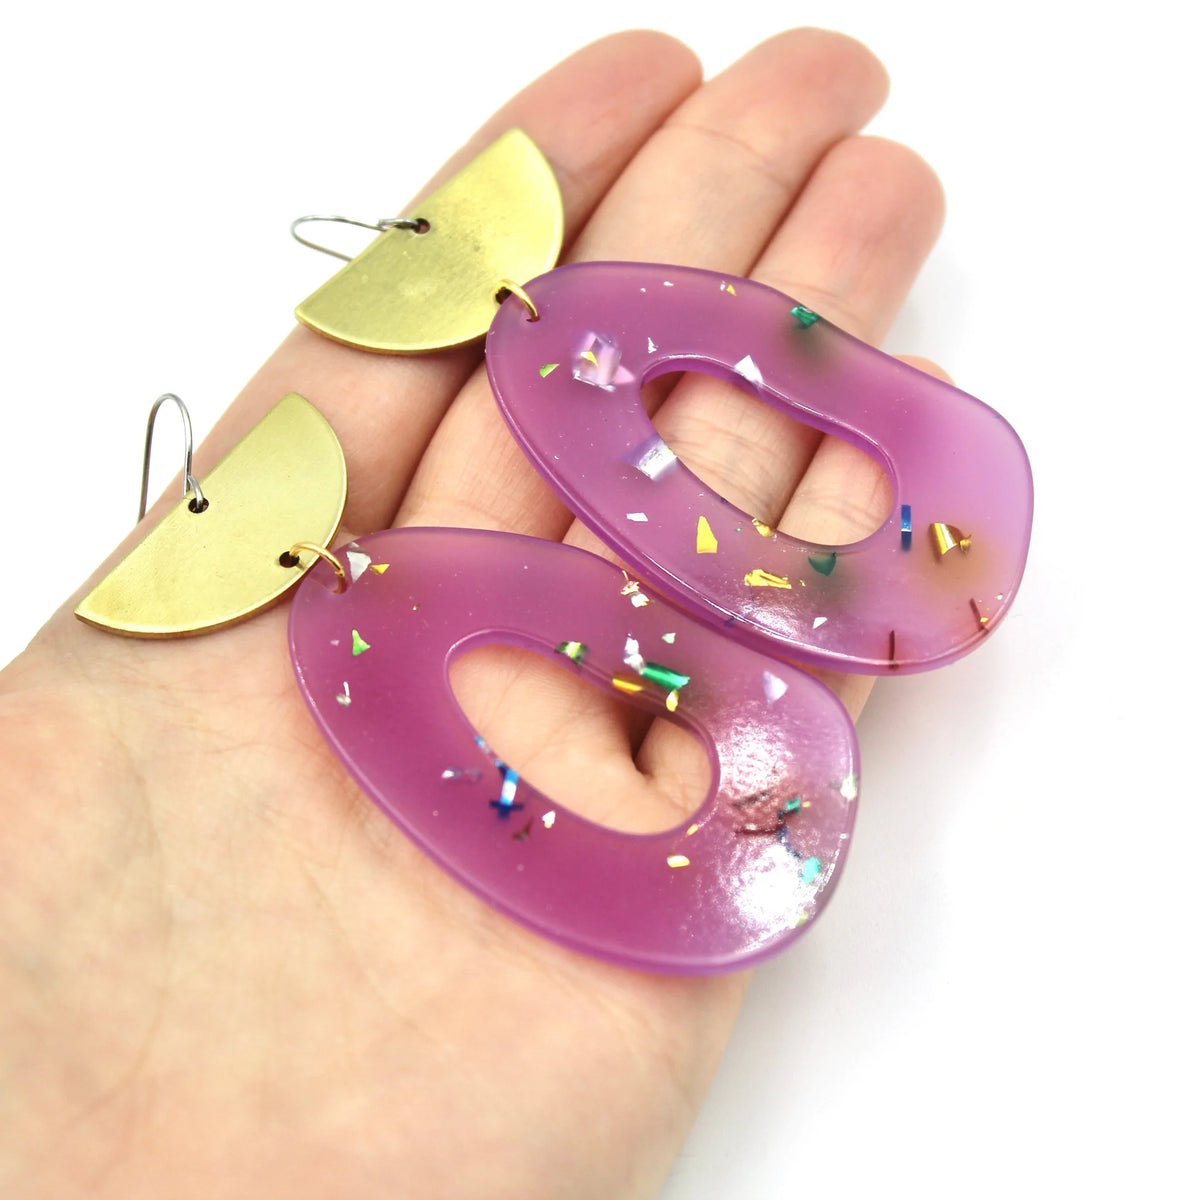 Purple Confetti Earrings